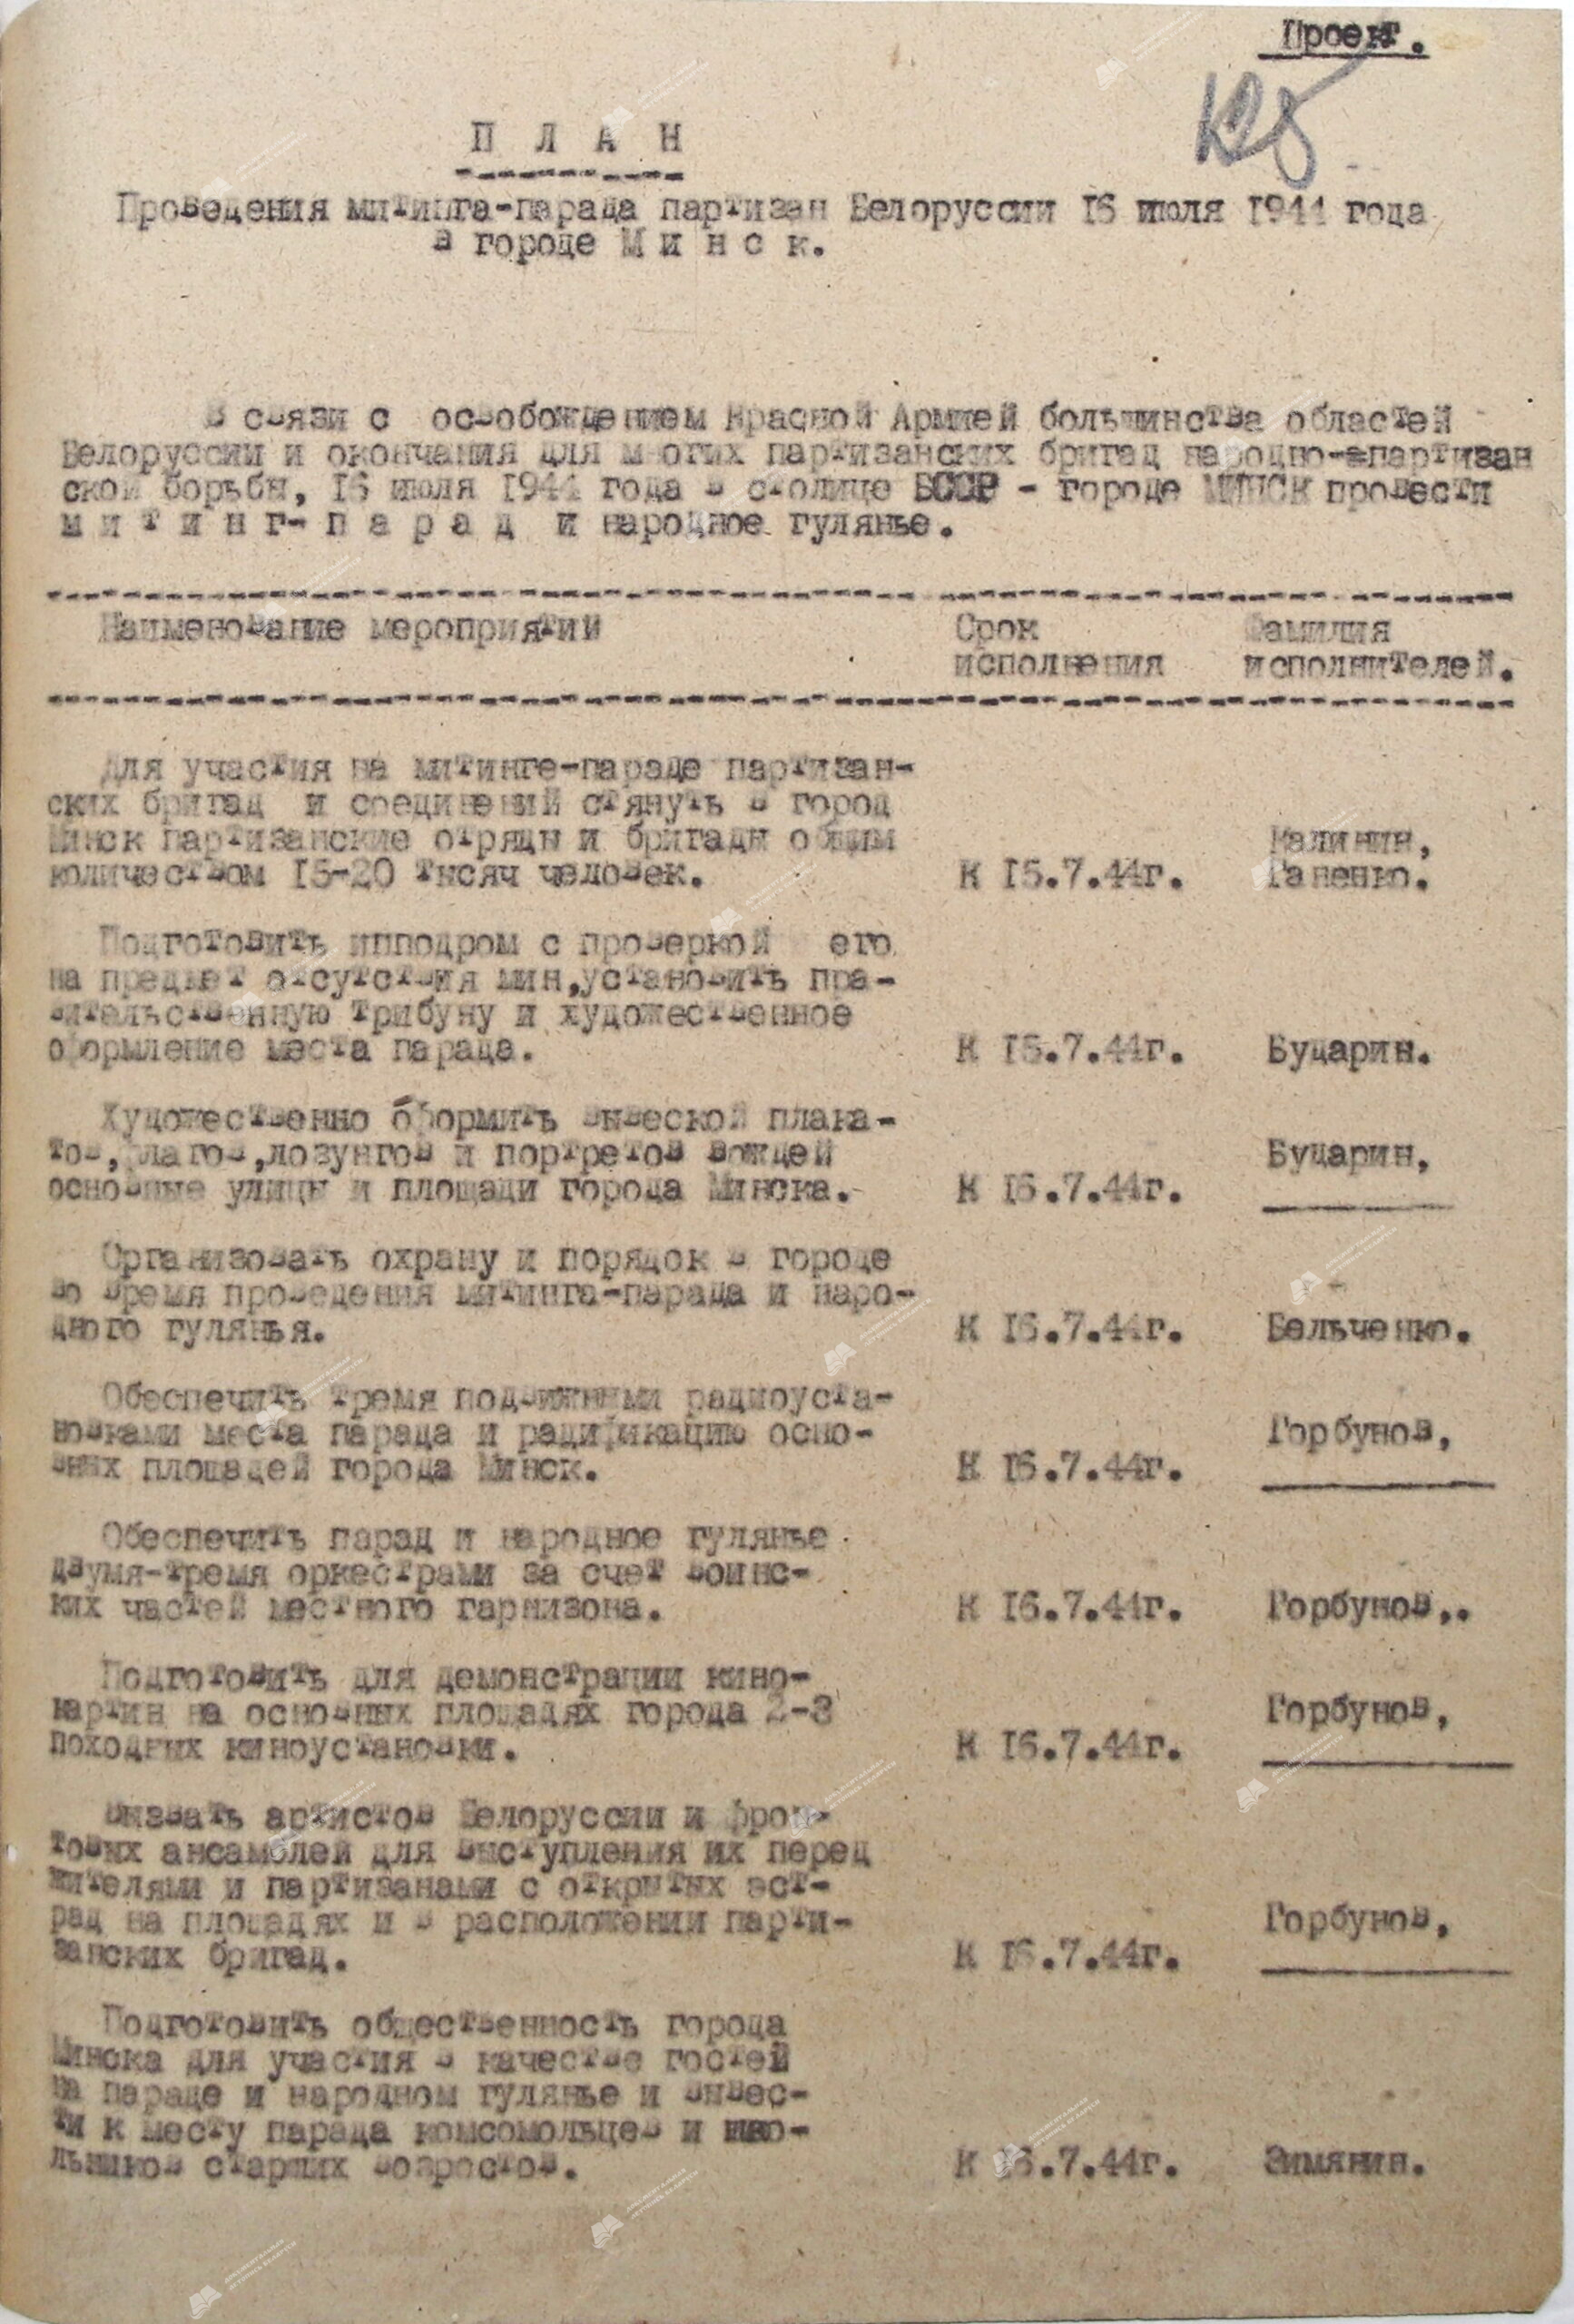 Проект плана проведения митинга-парада партизан Белоруссии 16 июля 1944 г.-стр. 0